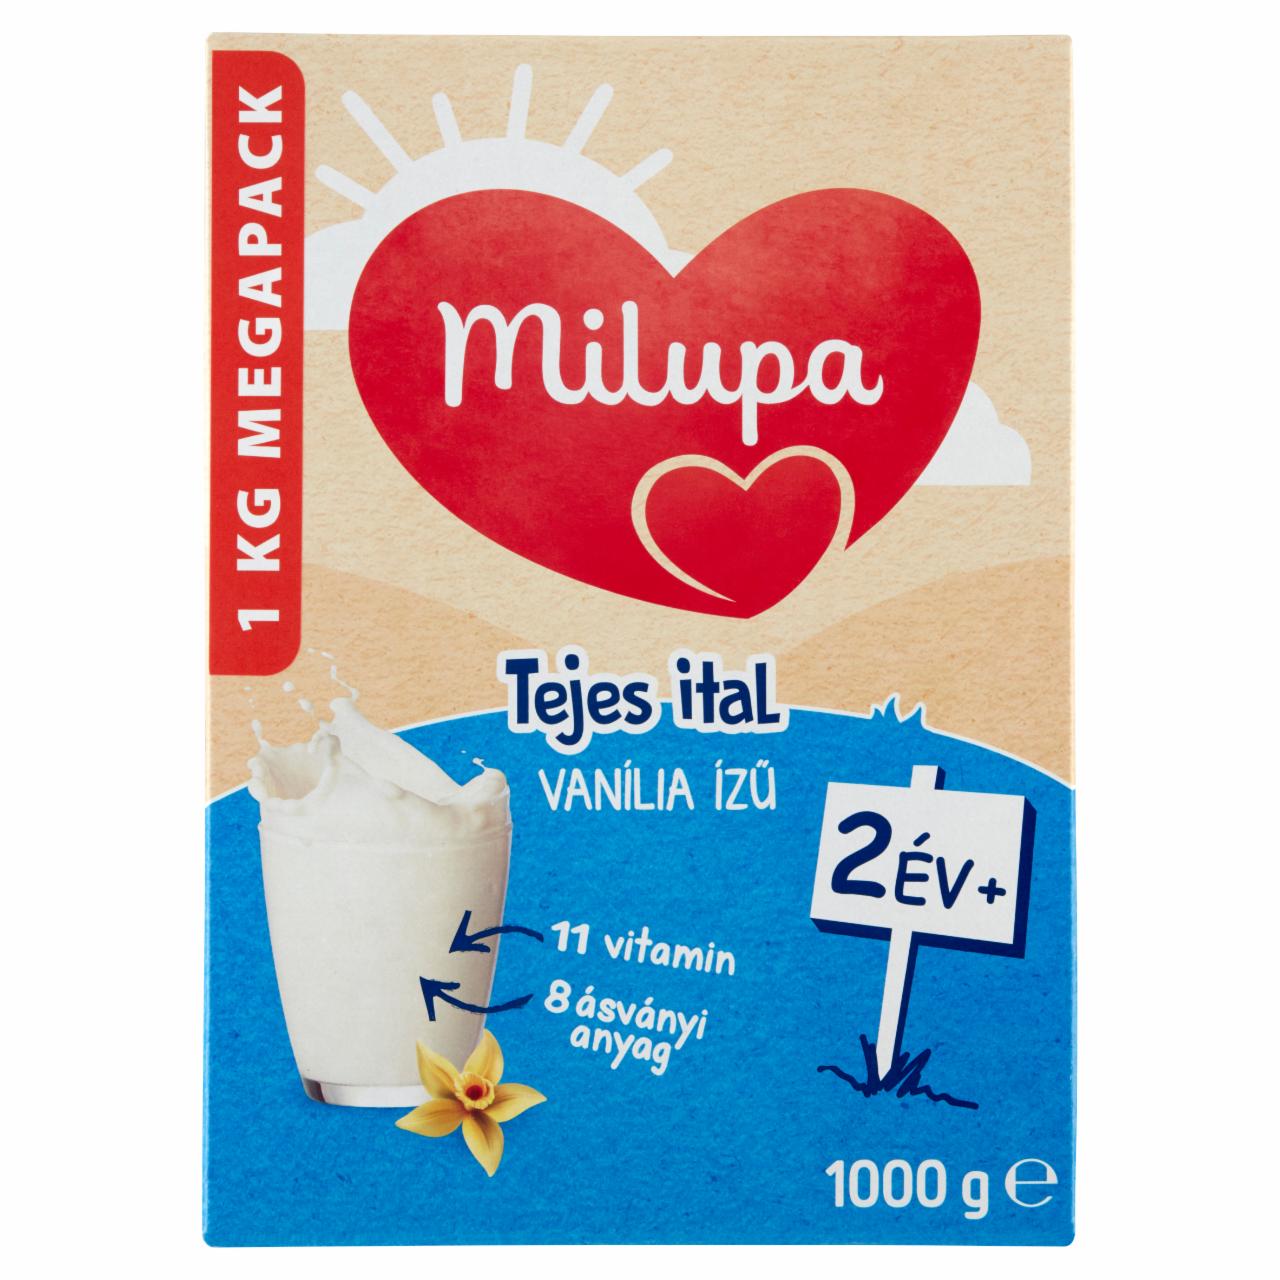 Képek - Milupa vaníliaízű tejes ital 24 hó+ 2 x 500 g (1000 g)